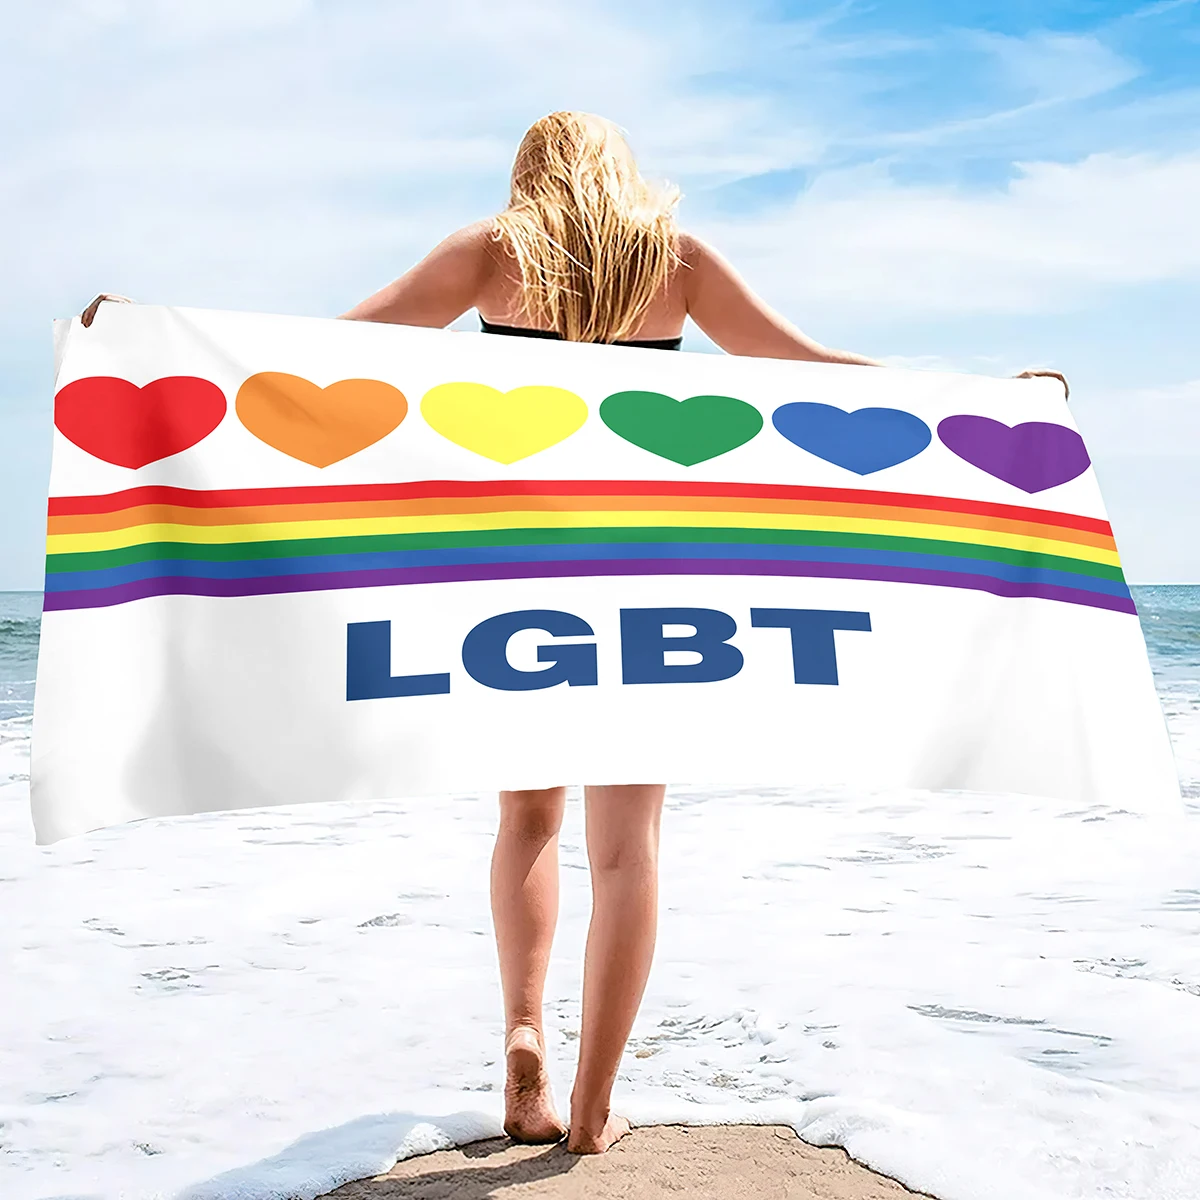 

Радуга, Гей ЛГБТ парадное пляжное полотенце, большого размера, пляжное полотенце из микрофибры, пляжное одеяло без песка, легкое